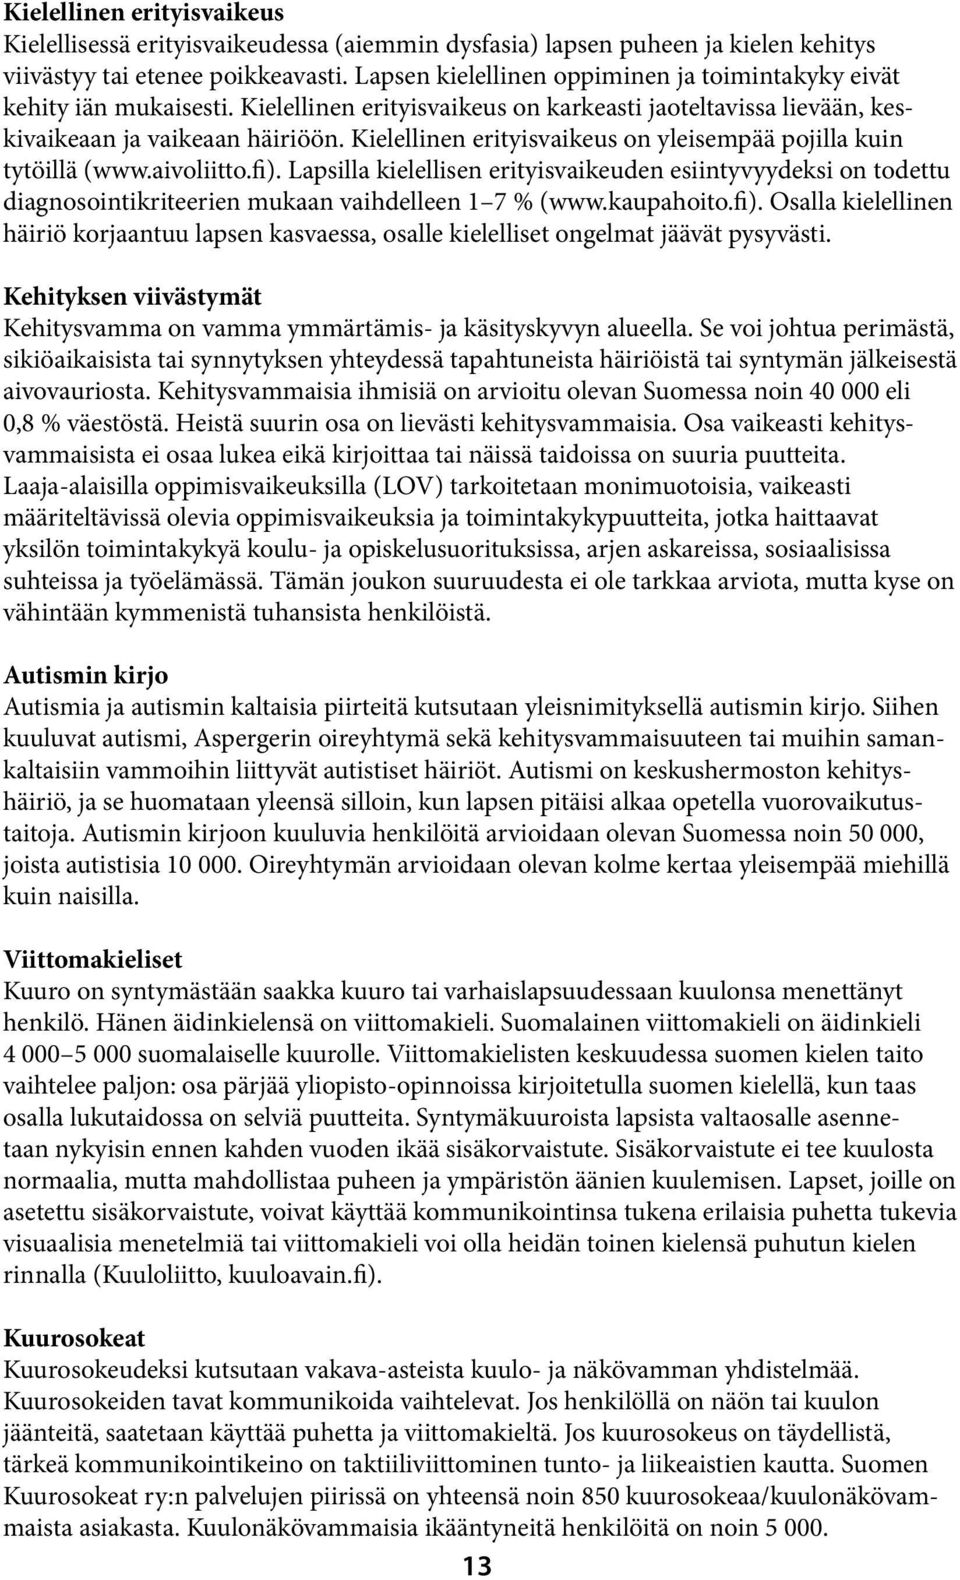 Kielellinen erityisvaikeus on yleisempää pojilla kuin tytöillä (www.aivoliitto.fi).